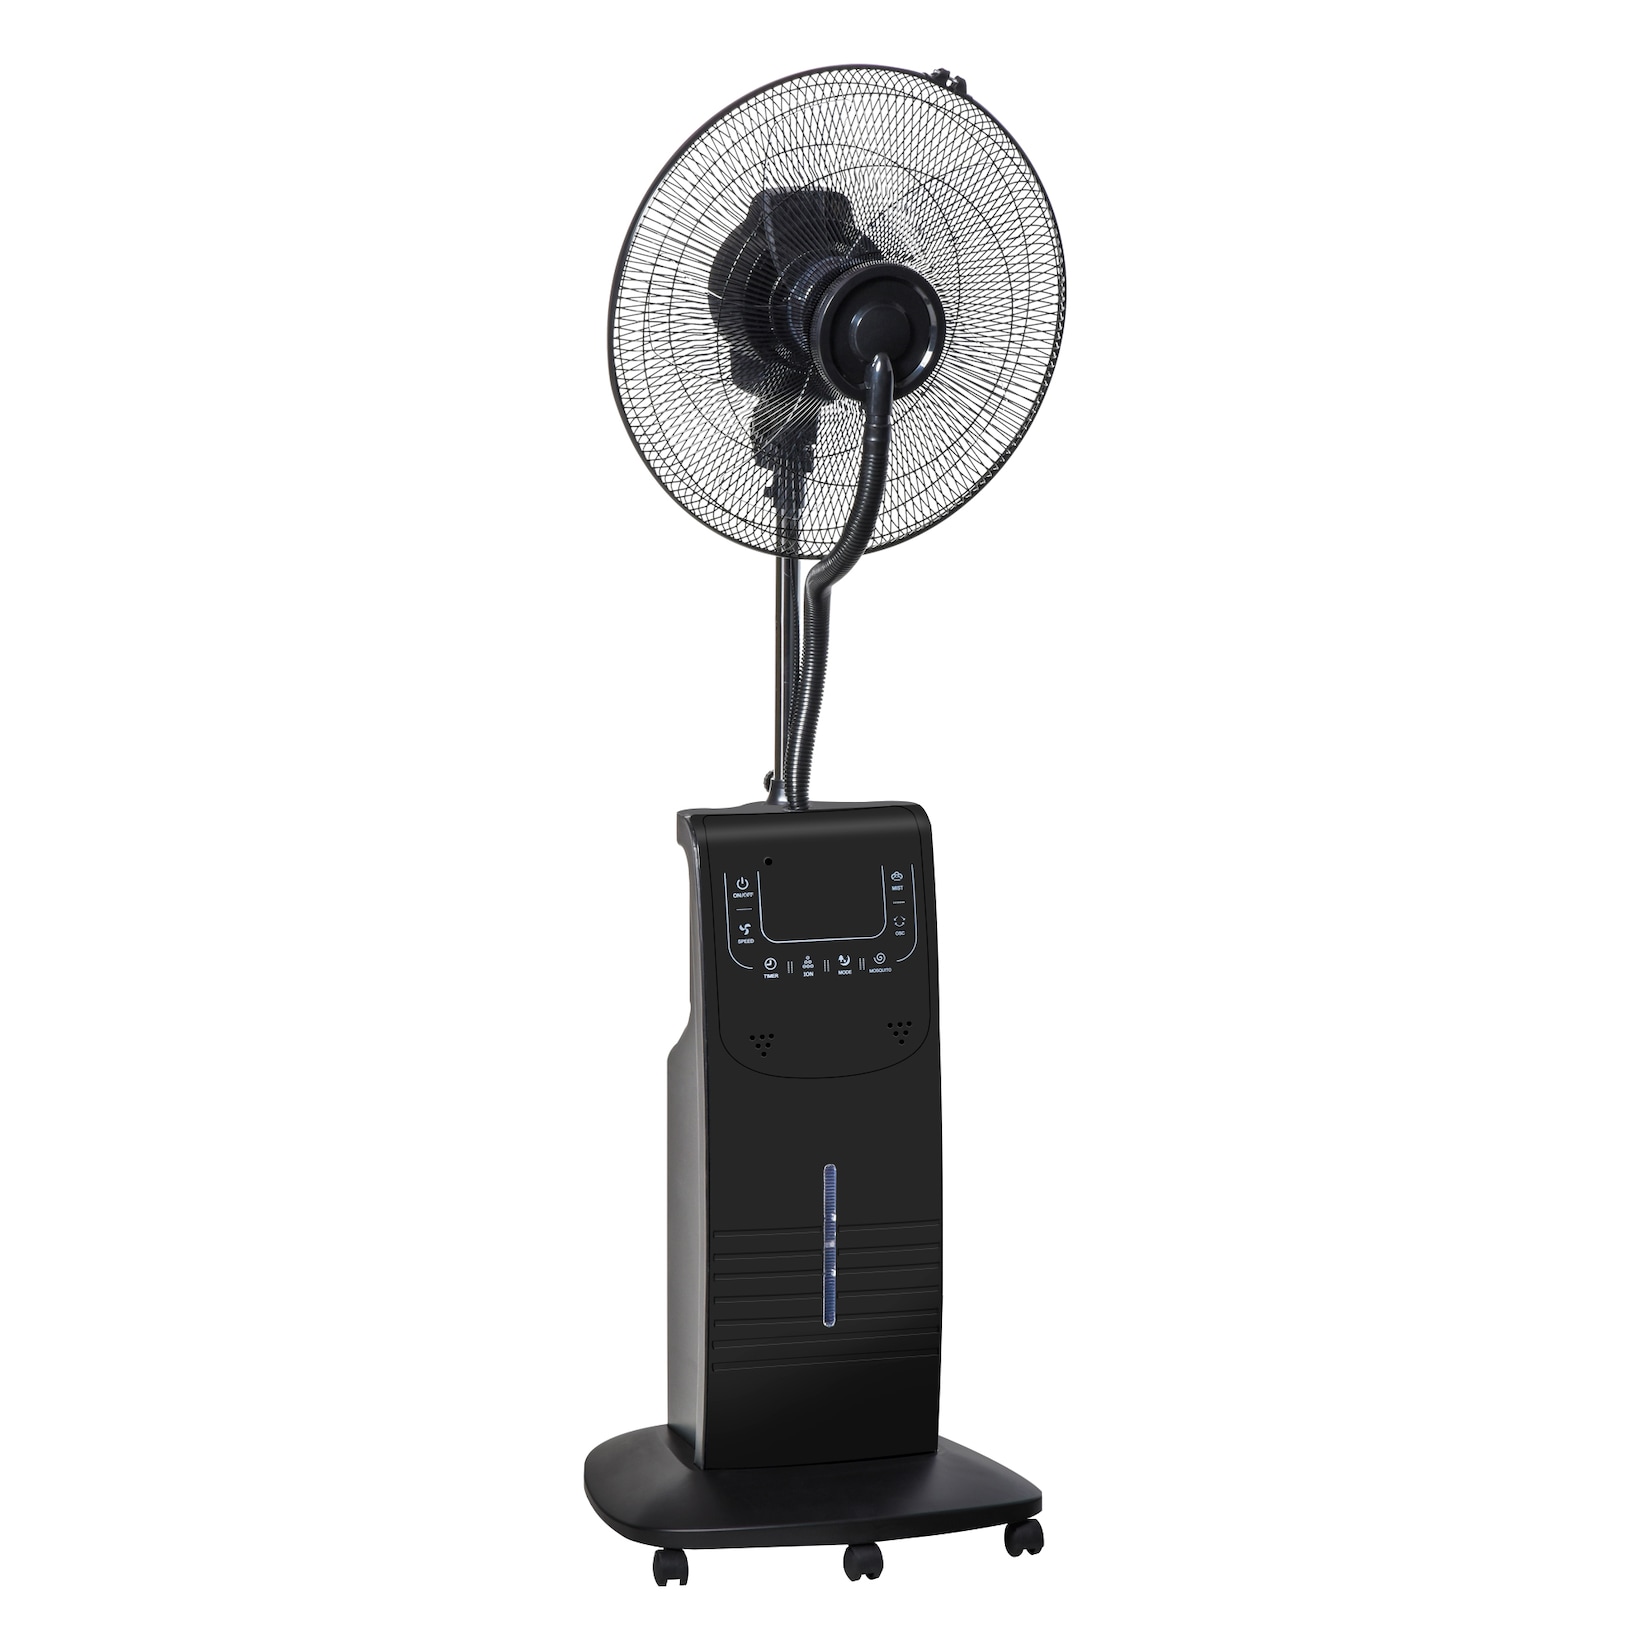 HOMCOM Nebel-Standventilator mit 3 Modi schwarz 44,5 x 44,5 x 135 cm (BxTxH) Ventilator Lüfter Wasserzerträuber Klein Klima